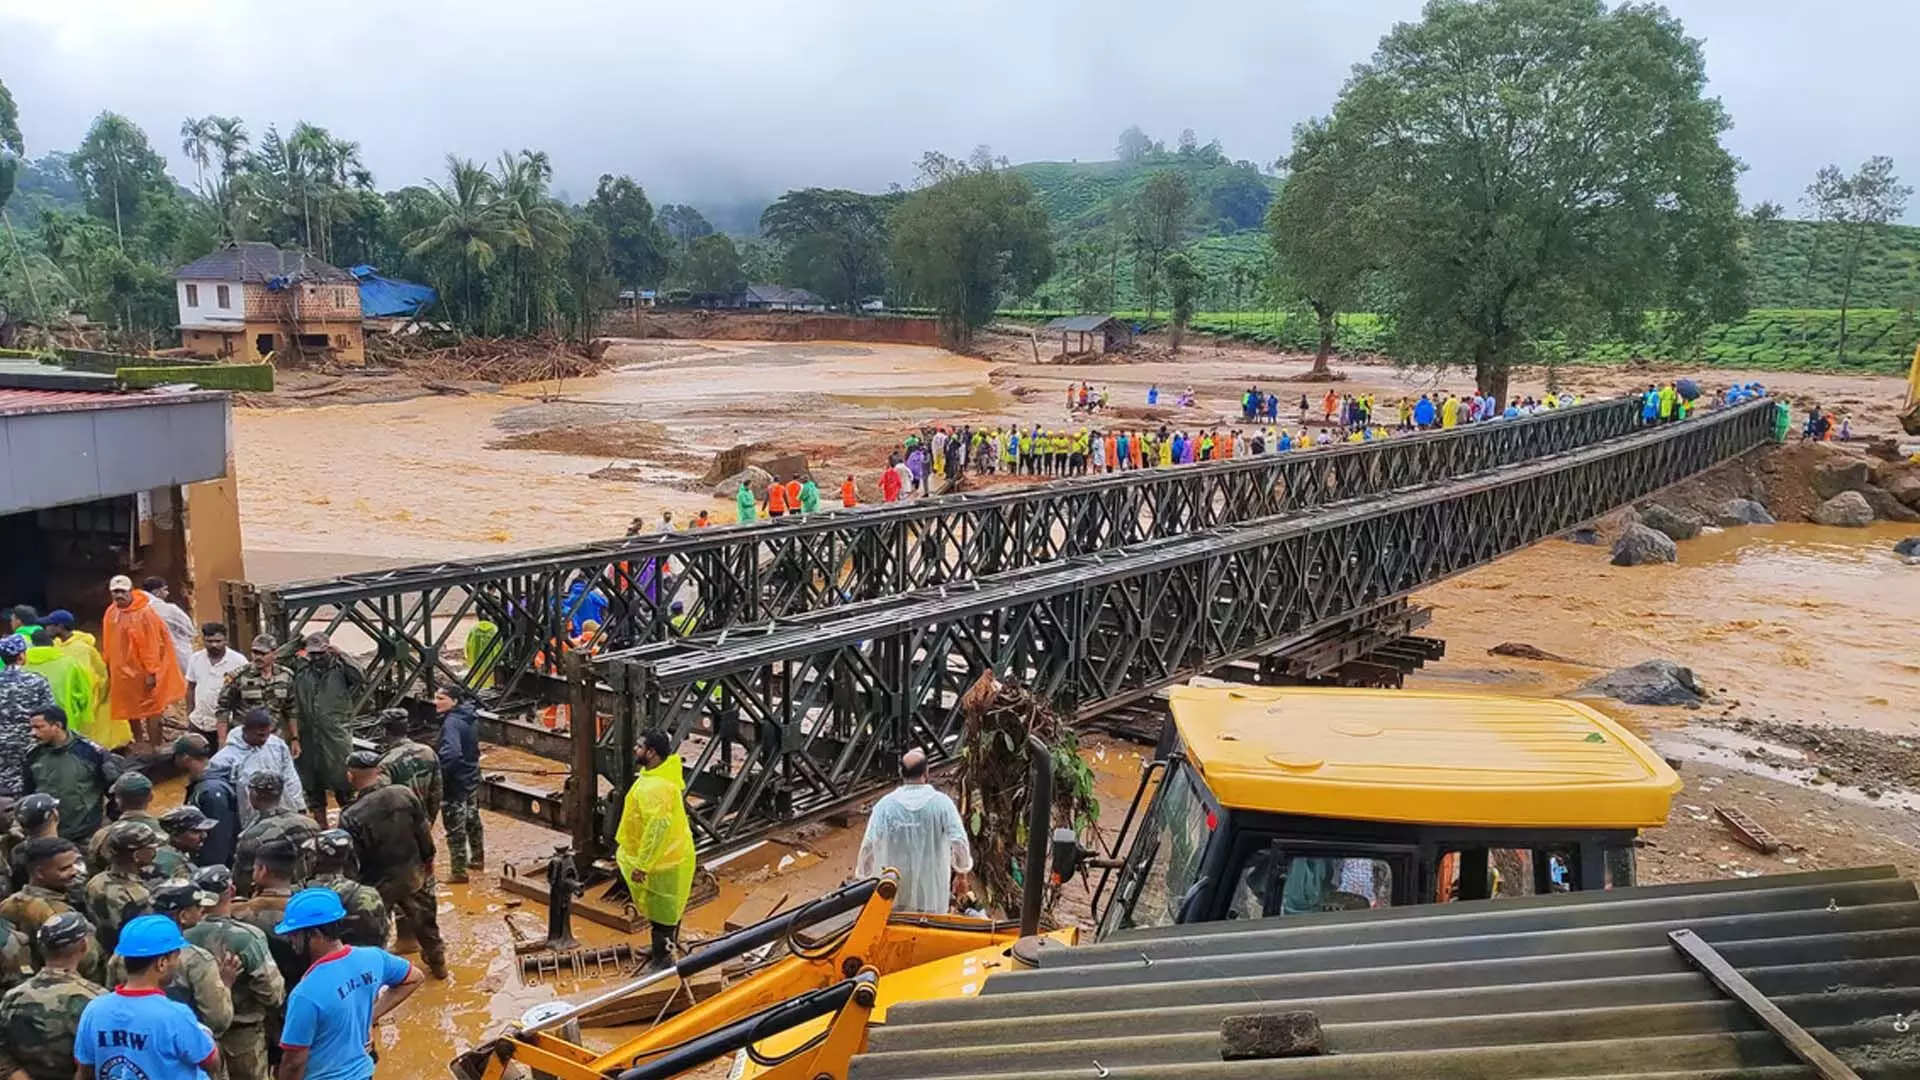 The bridge is up, लेकिन वायनाड में उम्मीदें धूमिल हो गईं